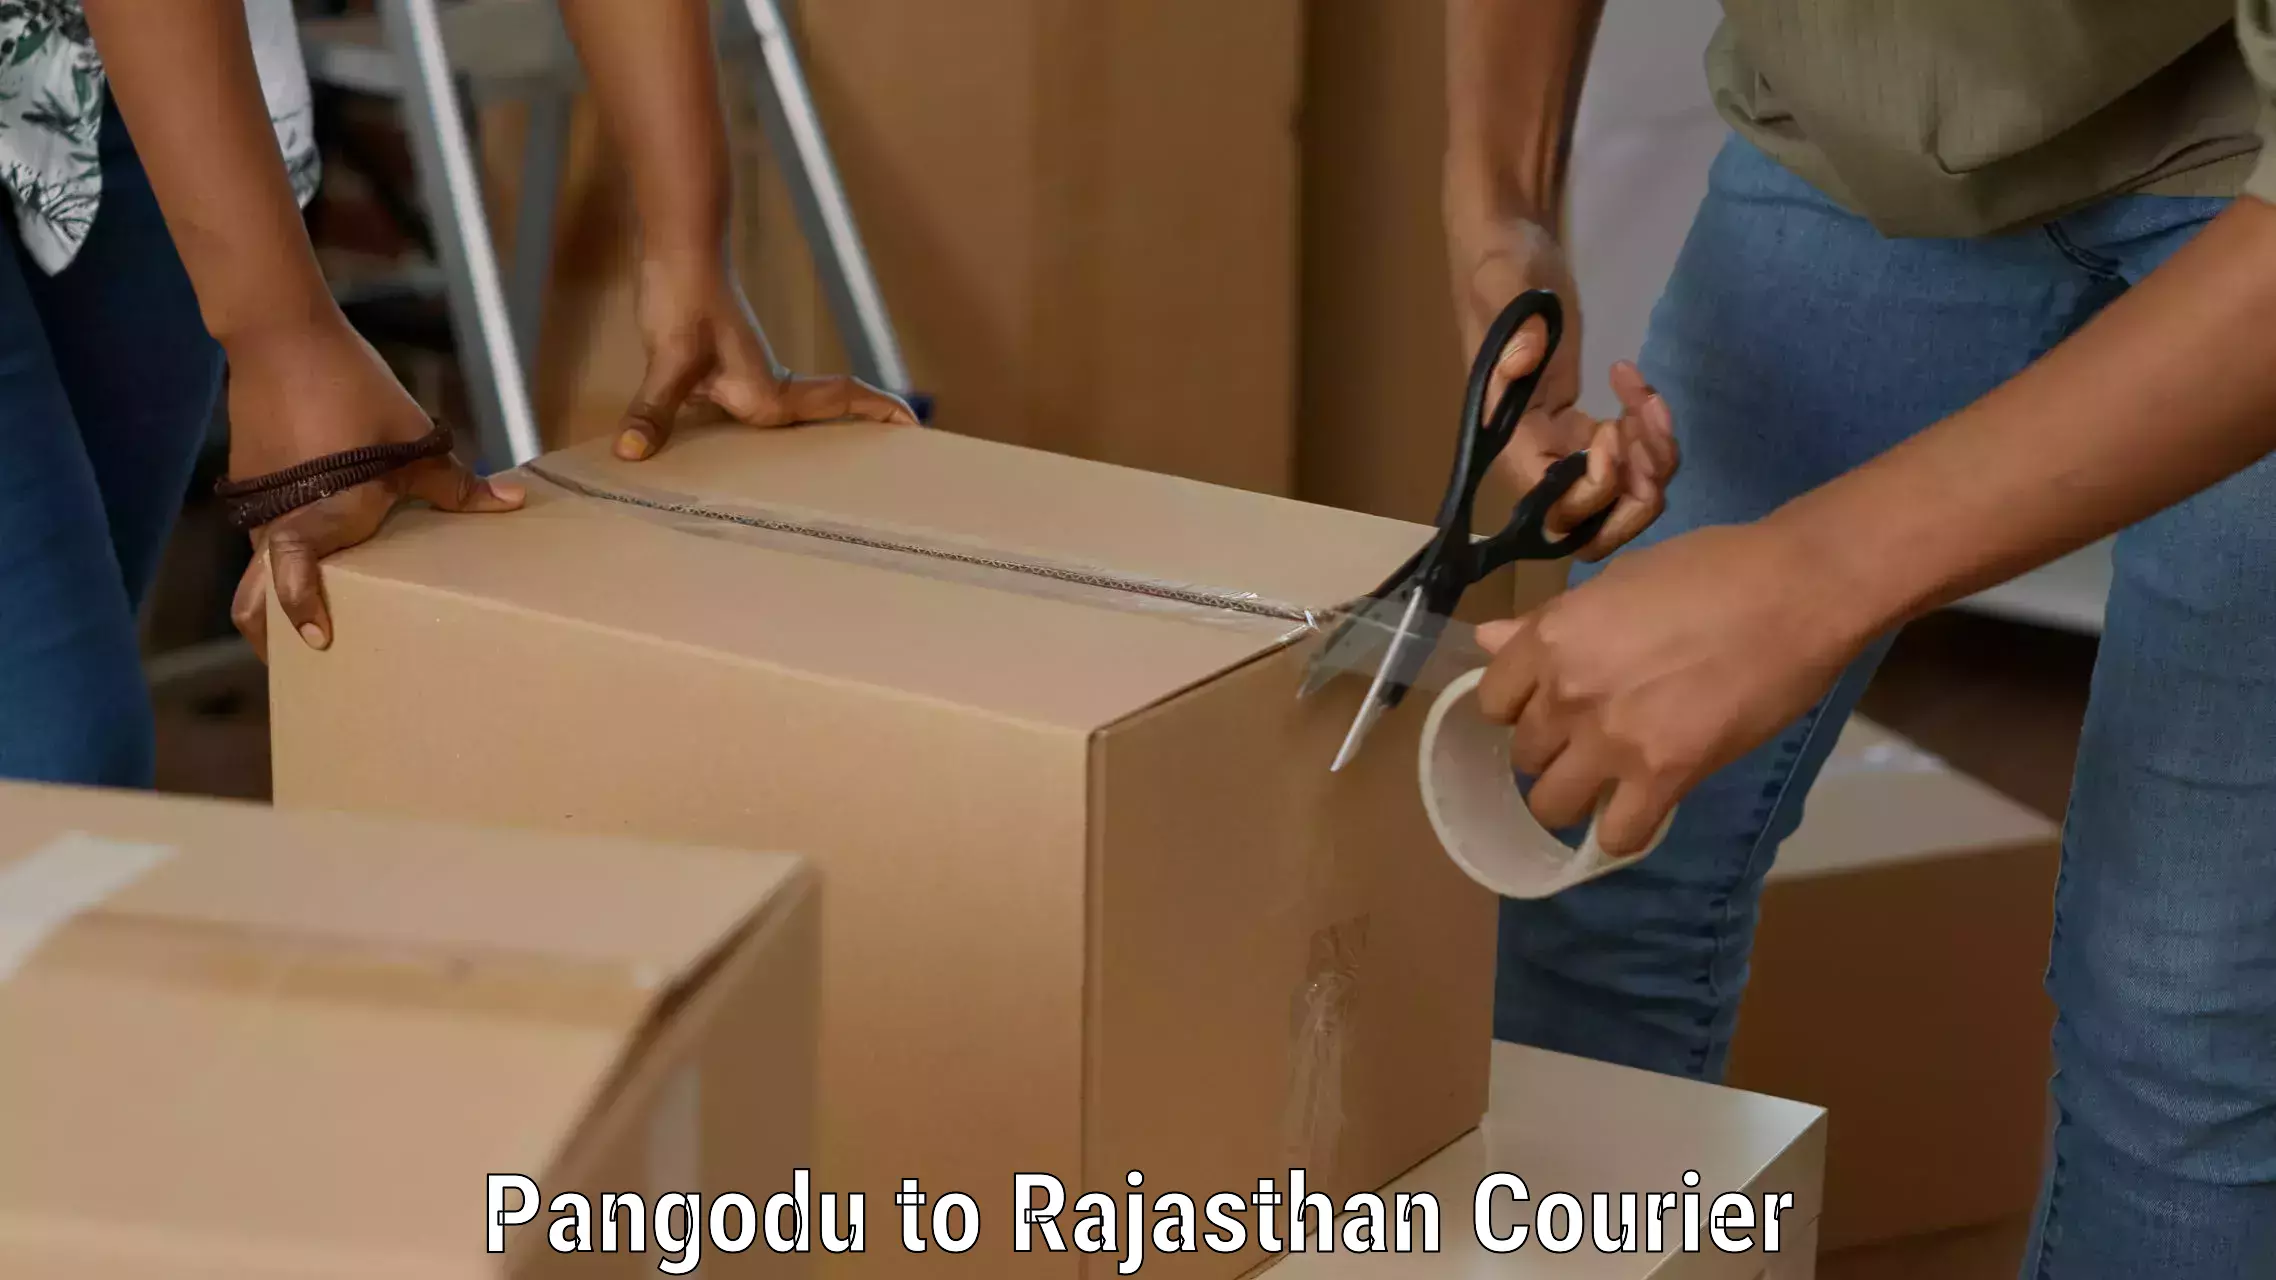 Express logistics providers Pangodu to Dungarpur